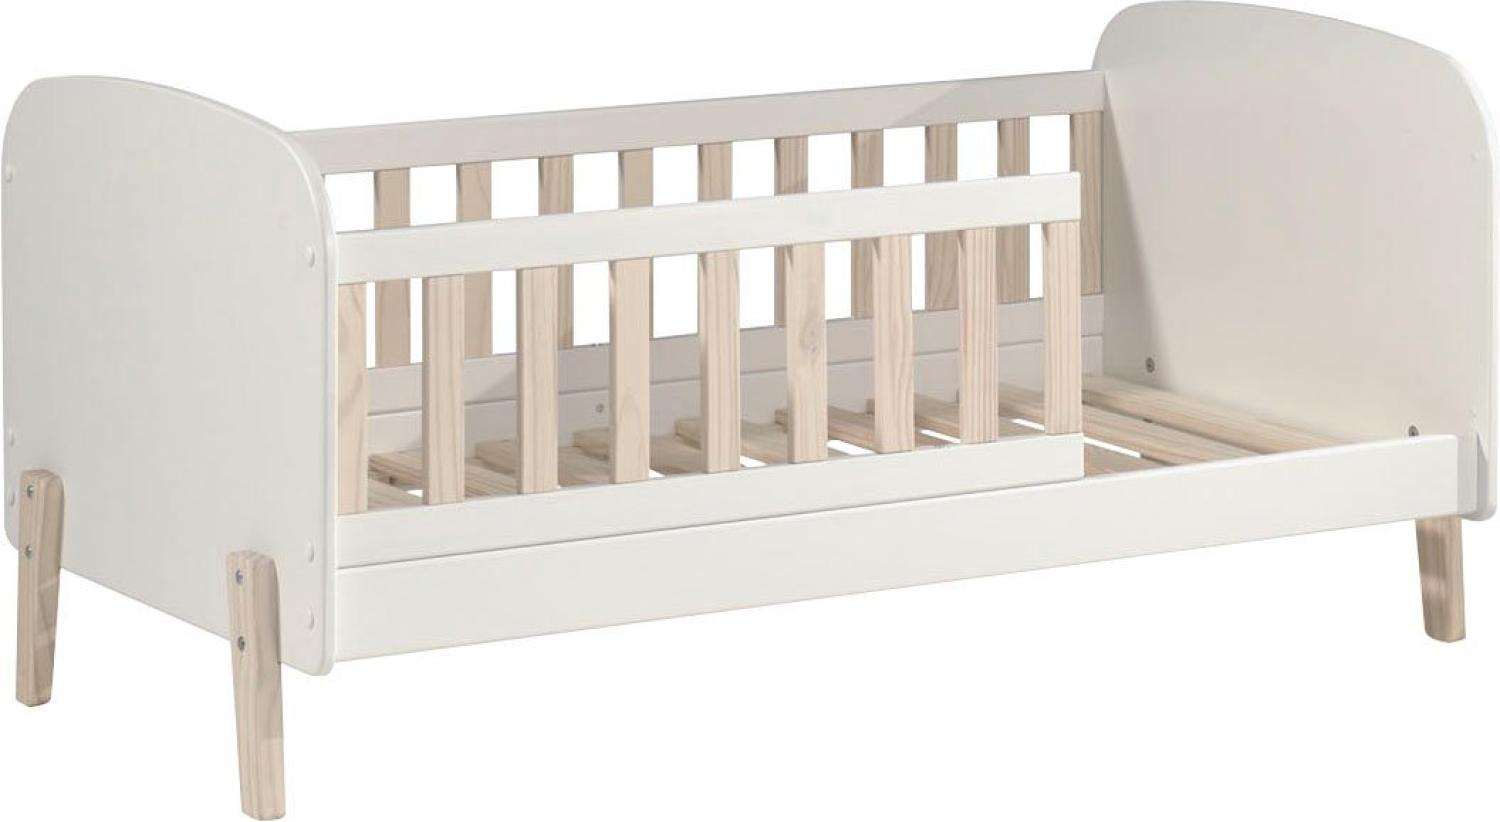 Kinderbett >KIDDY< in Weiß aus Massiv Kiefer und MDF - 147,4x68,3x77cm (BxHxT) Bild 1